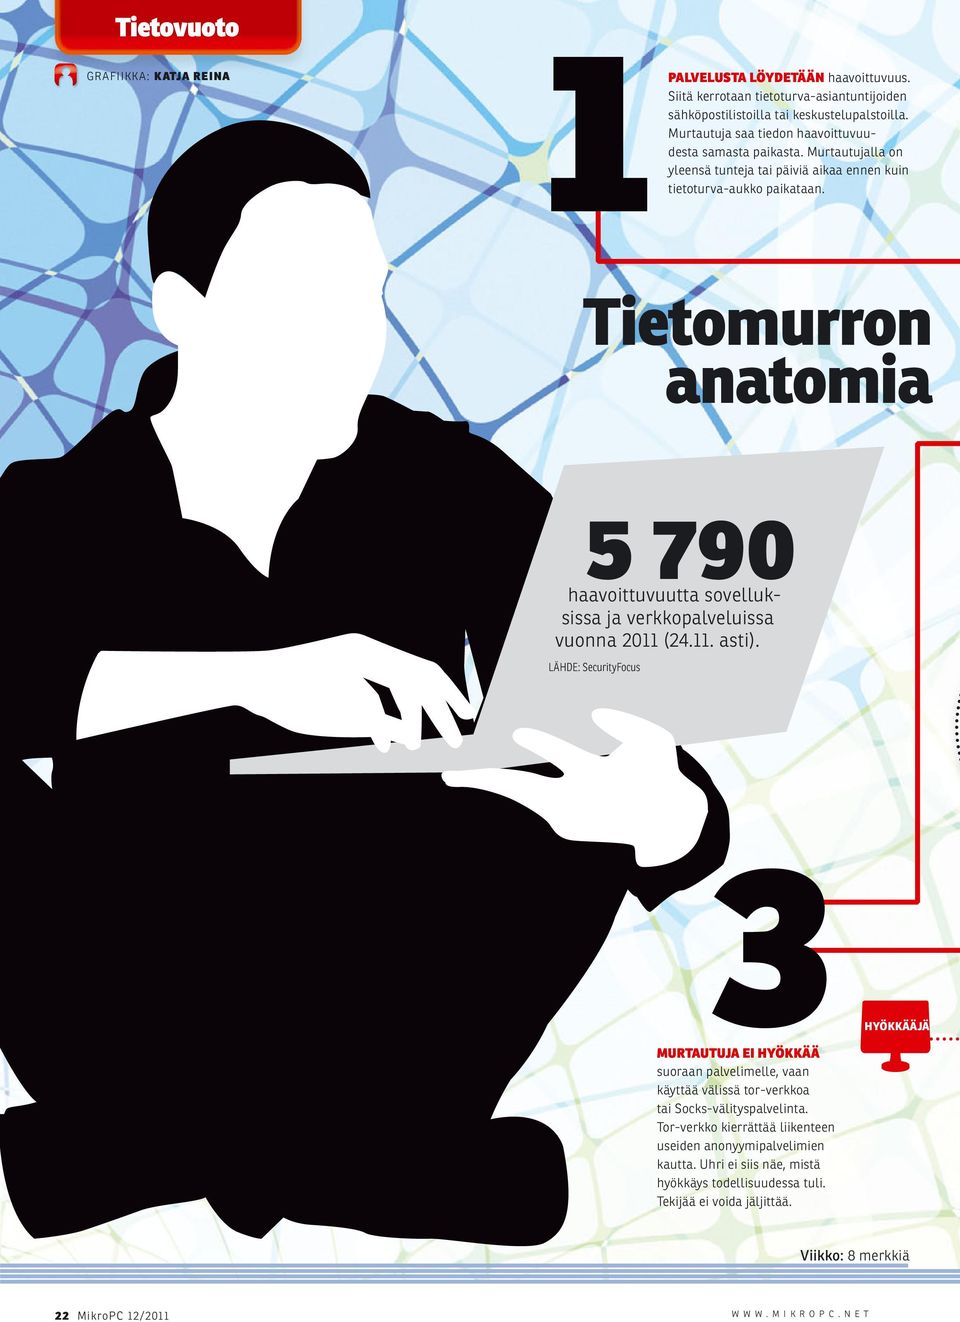 Tietomurron anatomia 5 790 haavoittuvuutta sovelluksissa ja verkkopalveluissa vuonna 2011 (24.11. asti).